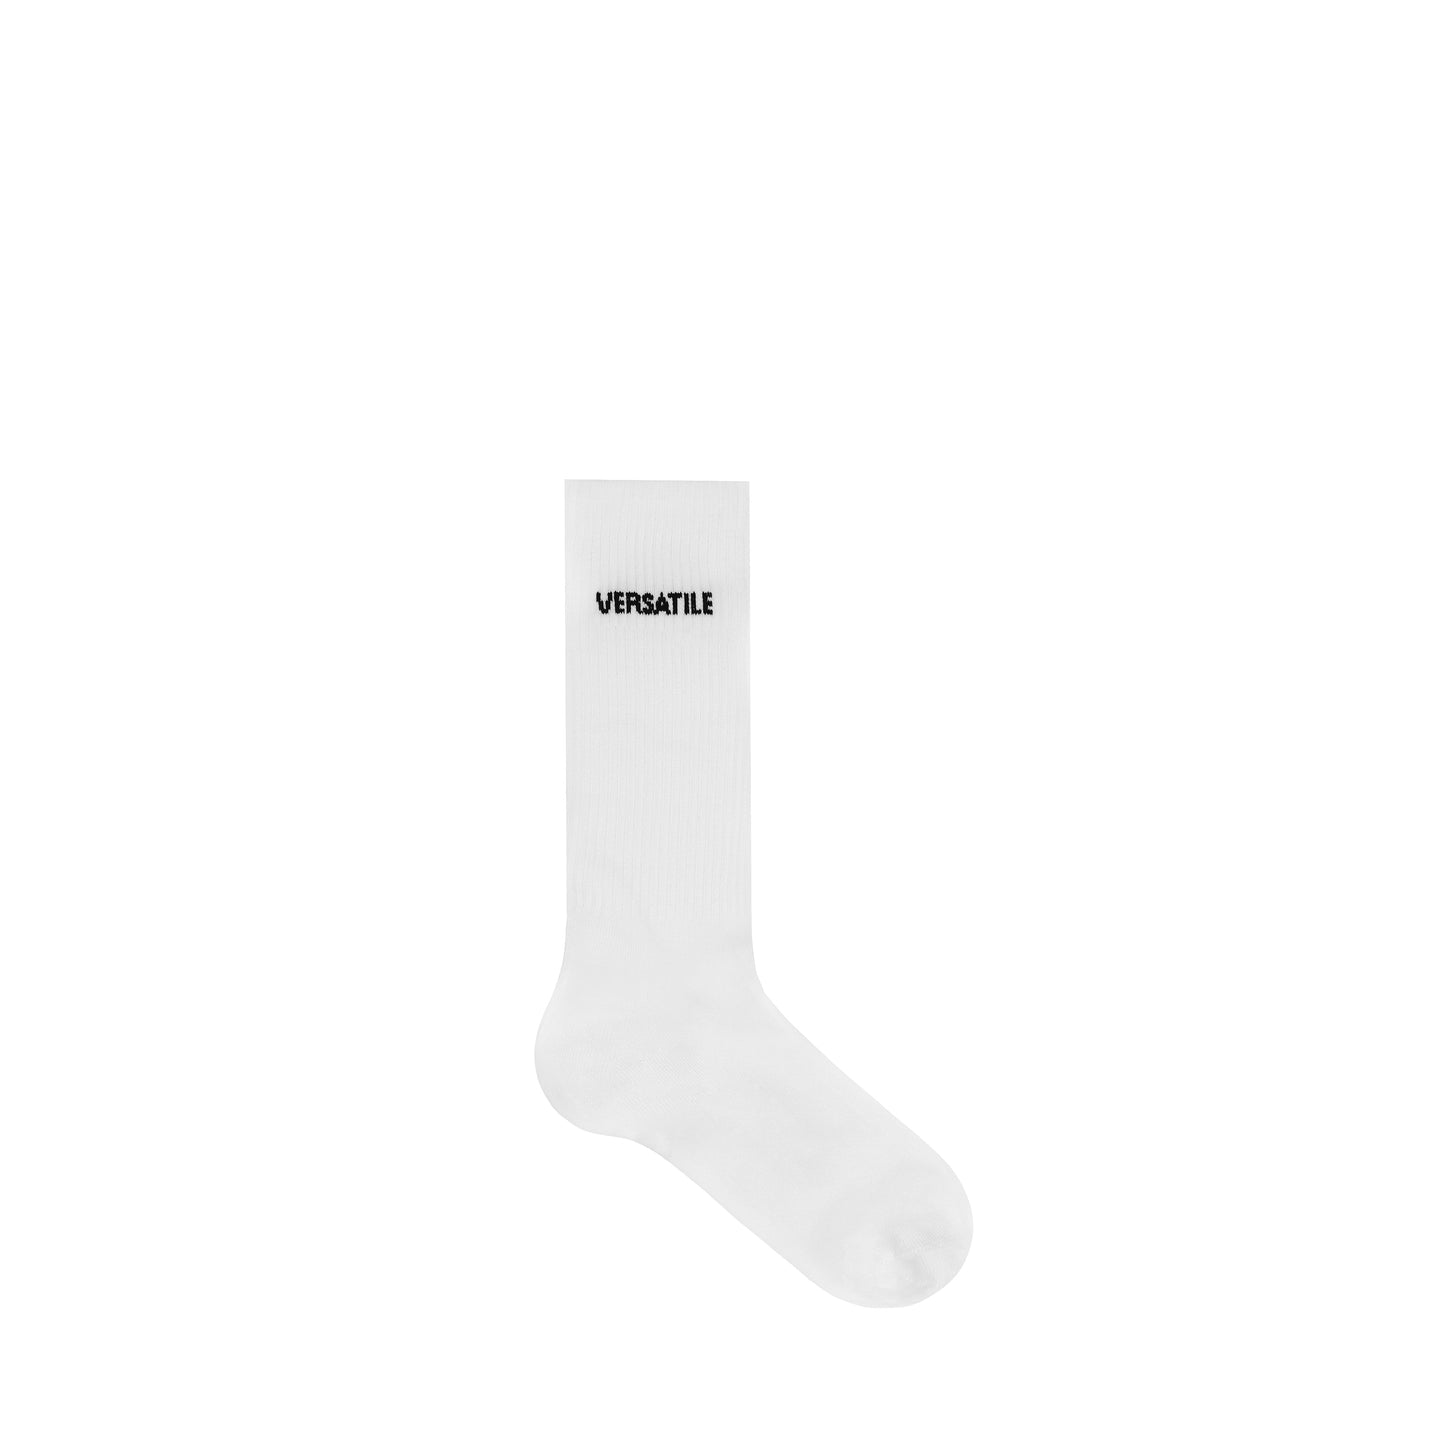 Socks (Versatile White)